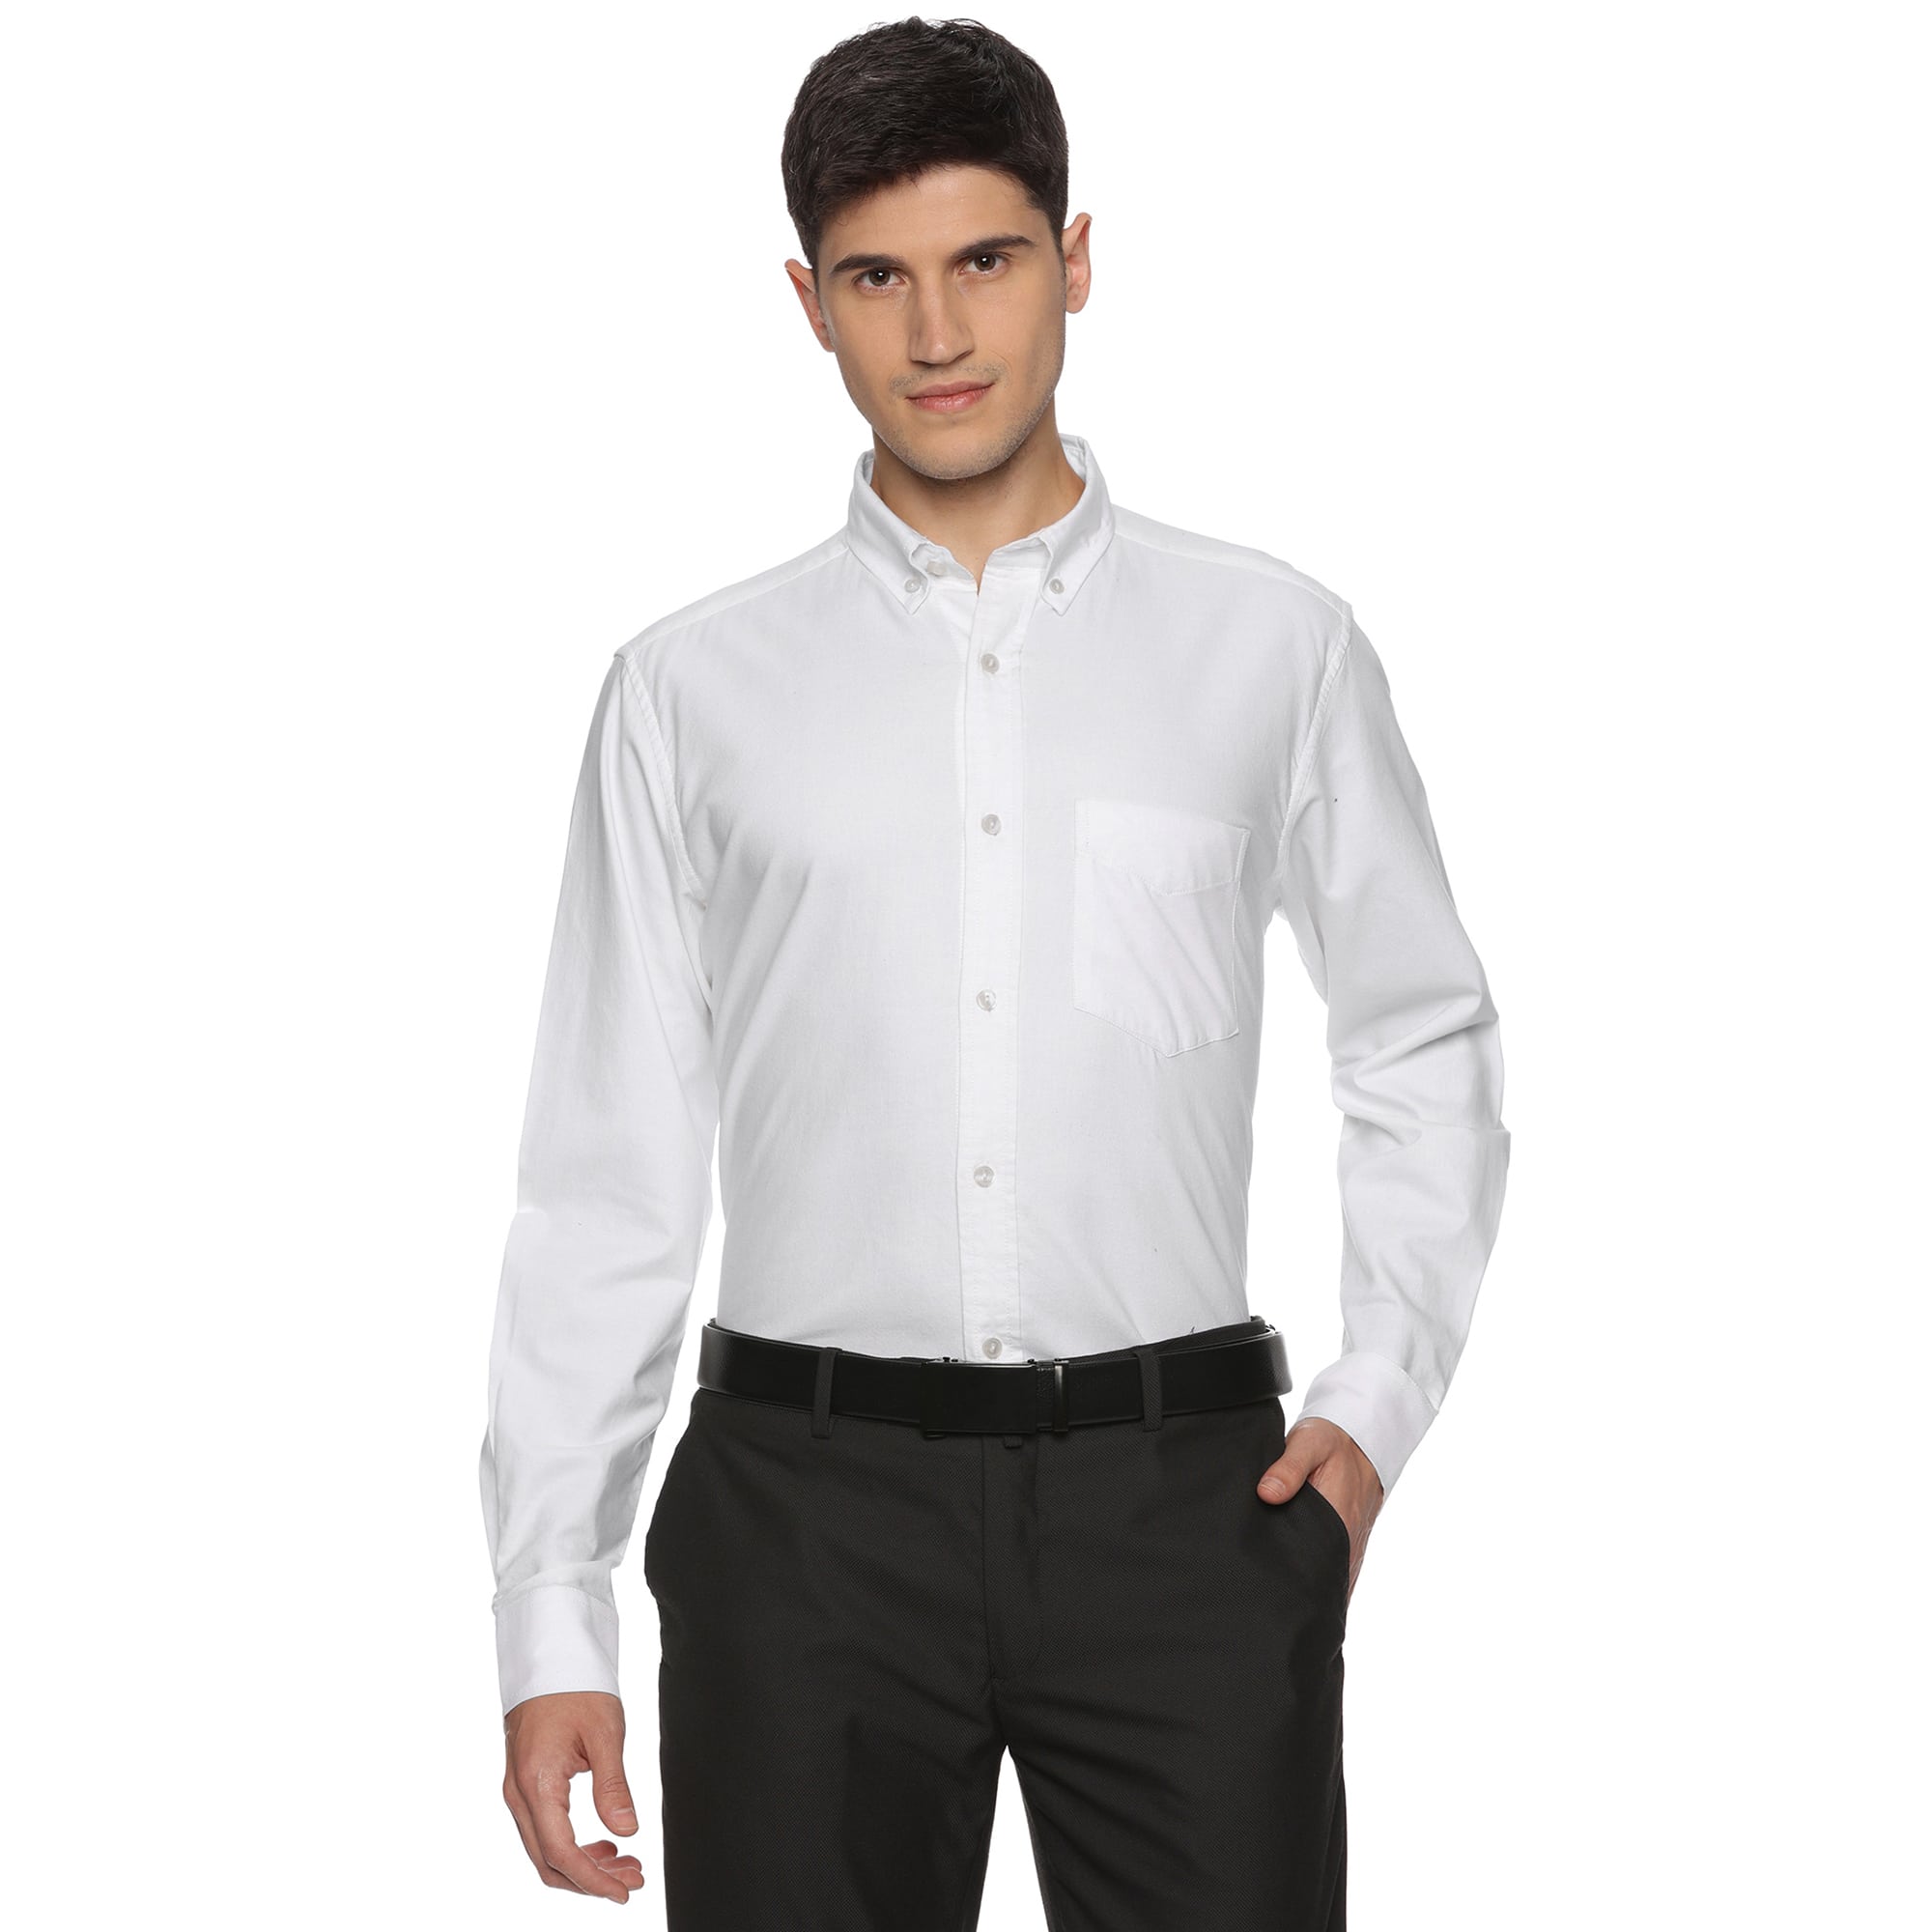 Regal Oxford White Shirt